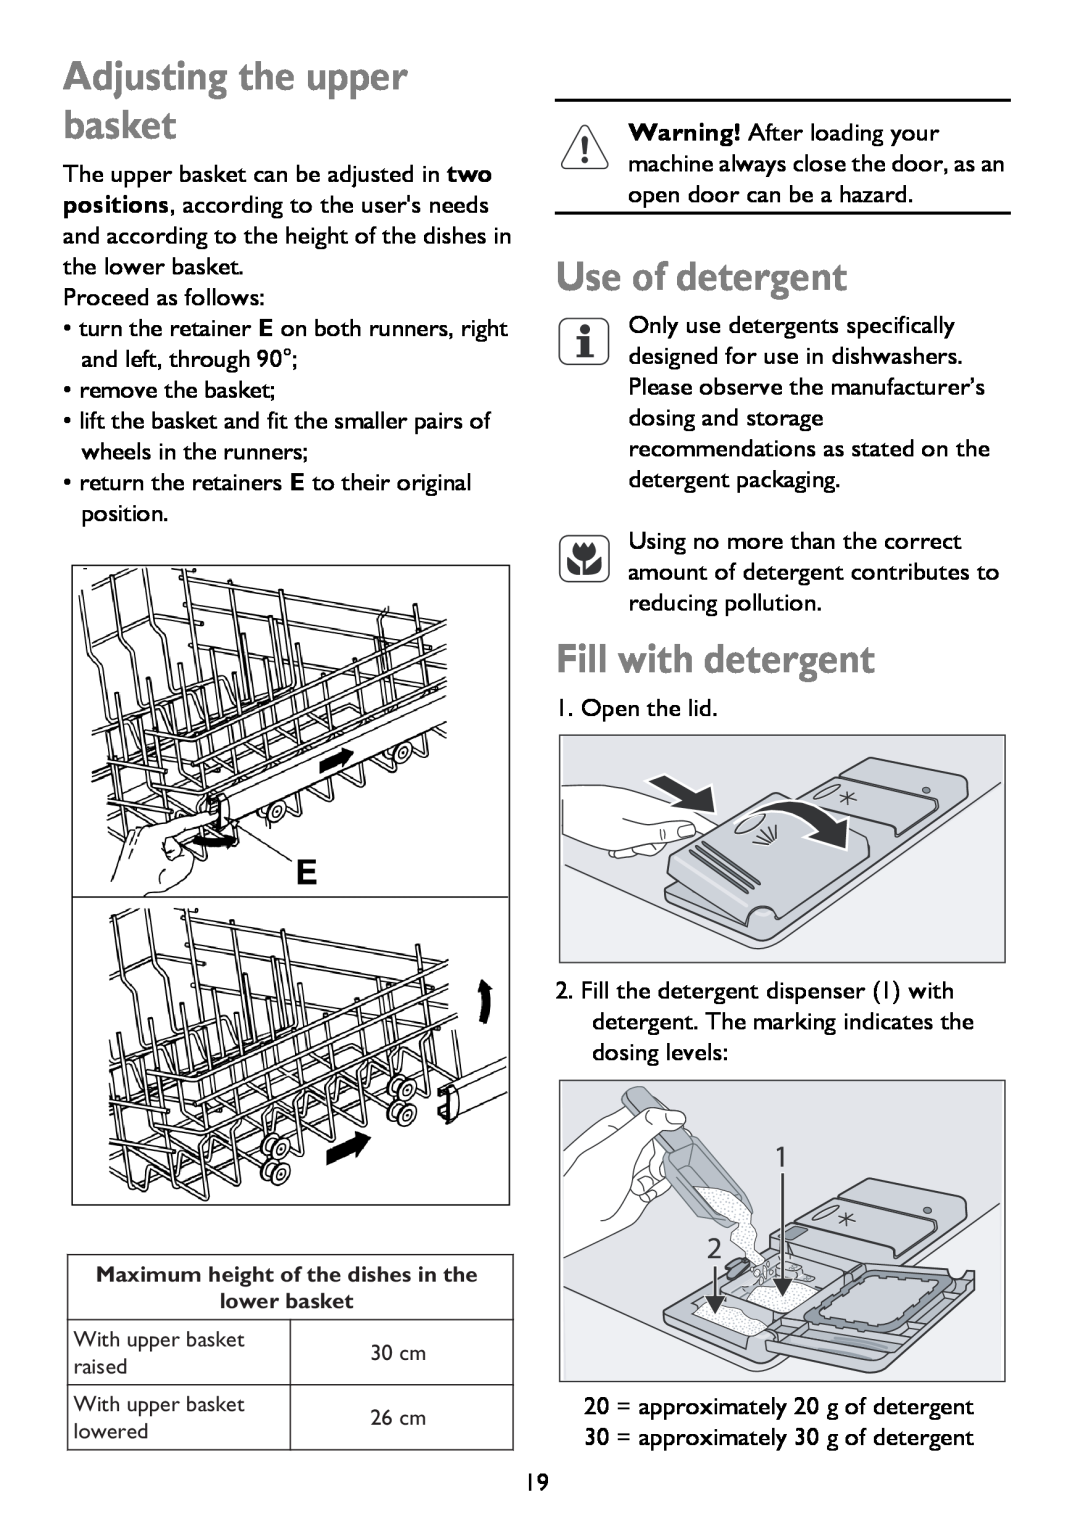 John Lewis JLDWS 907 instruction manual Adjusting the upper basket, Use of detergent, Fill with detergent 